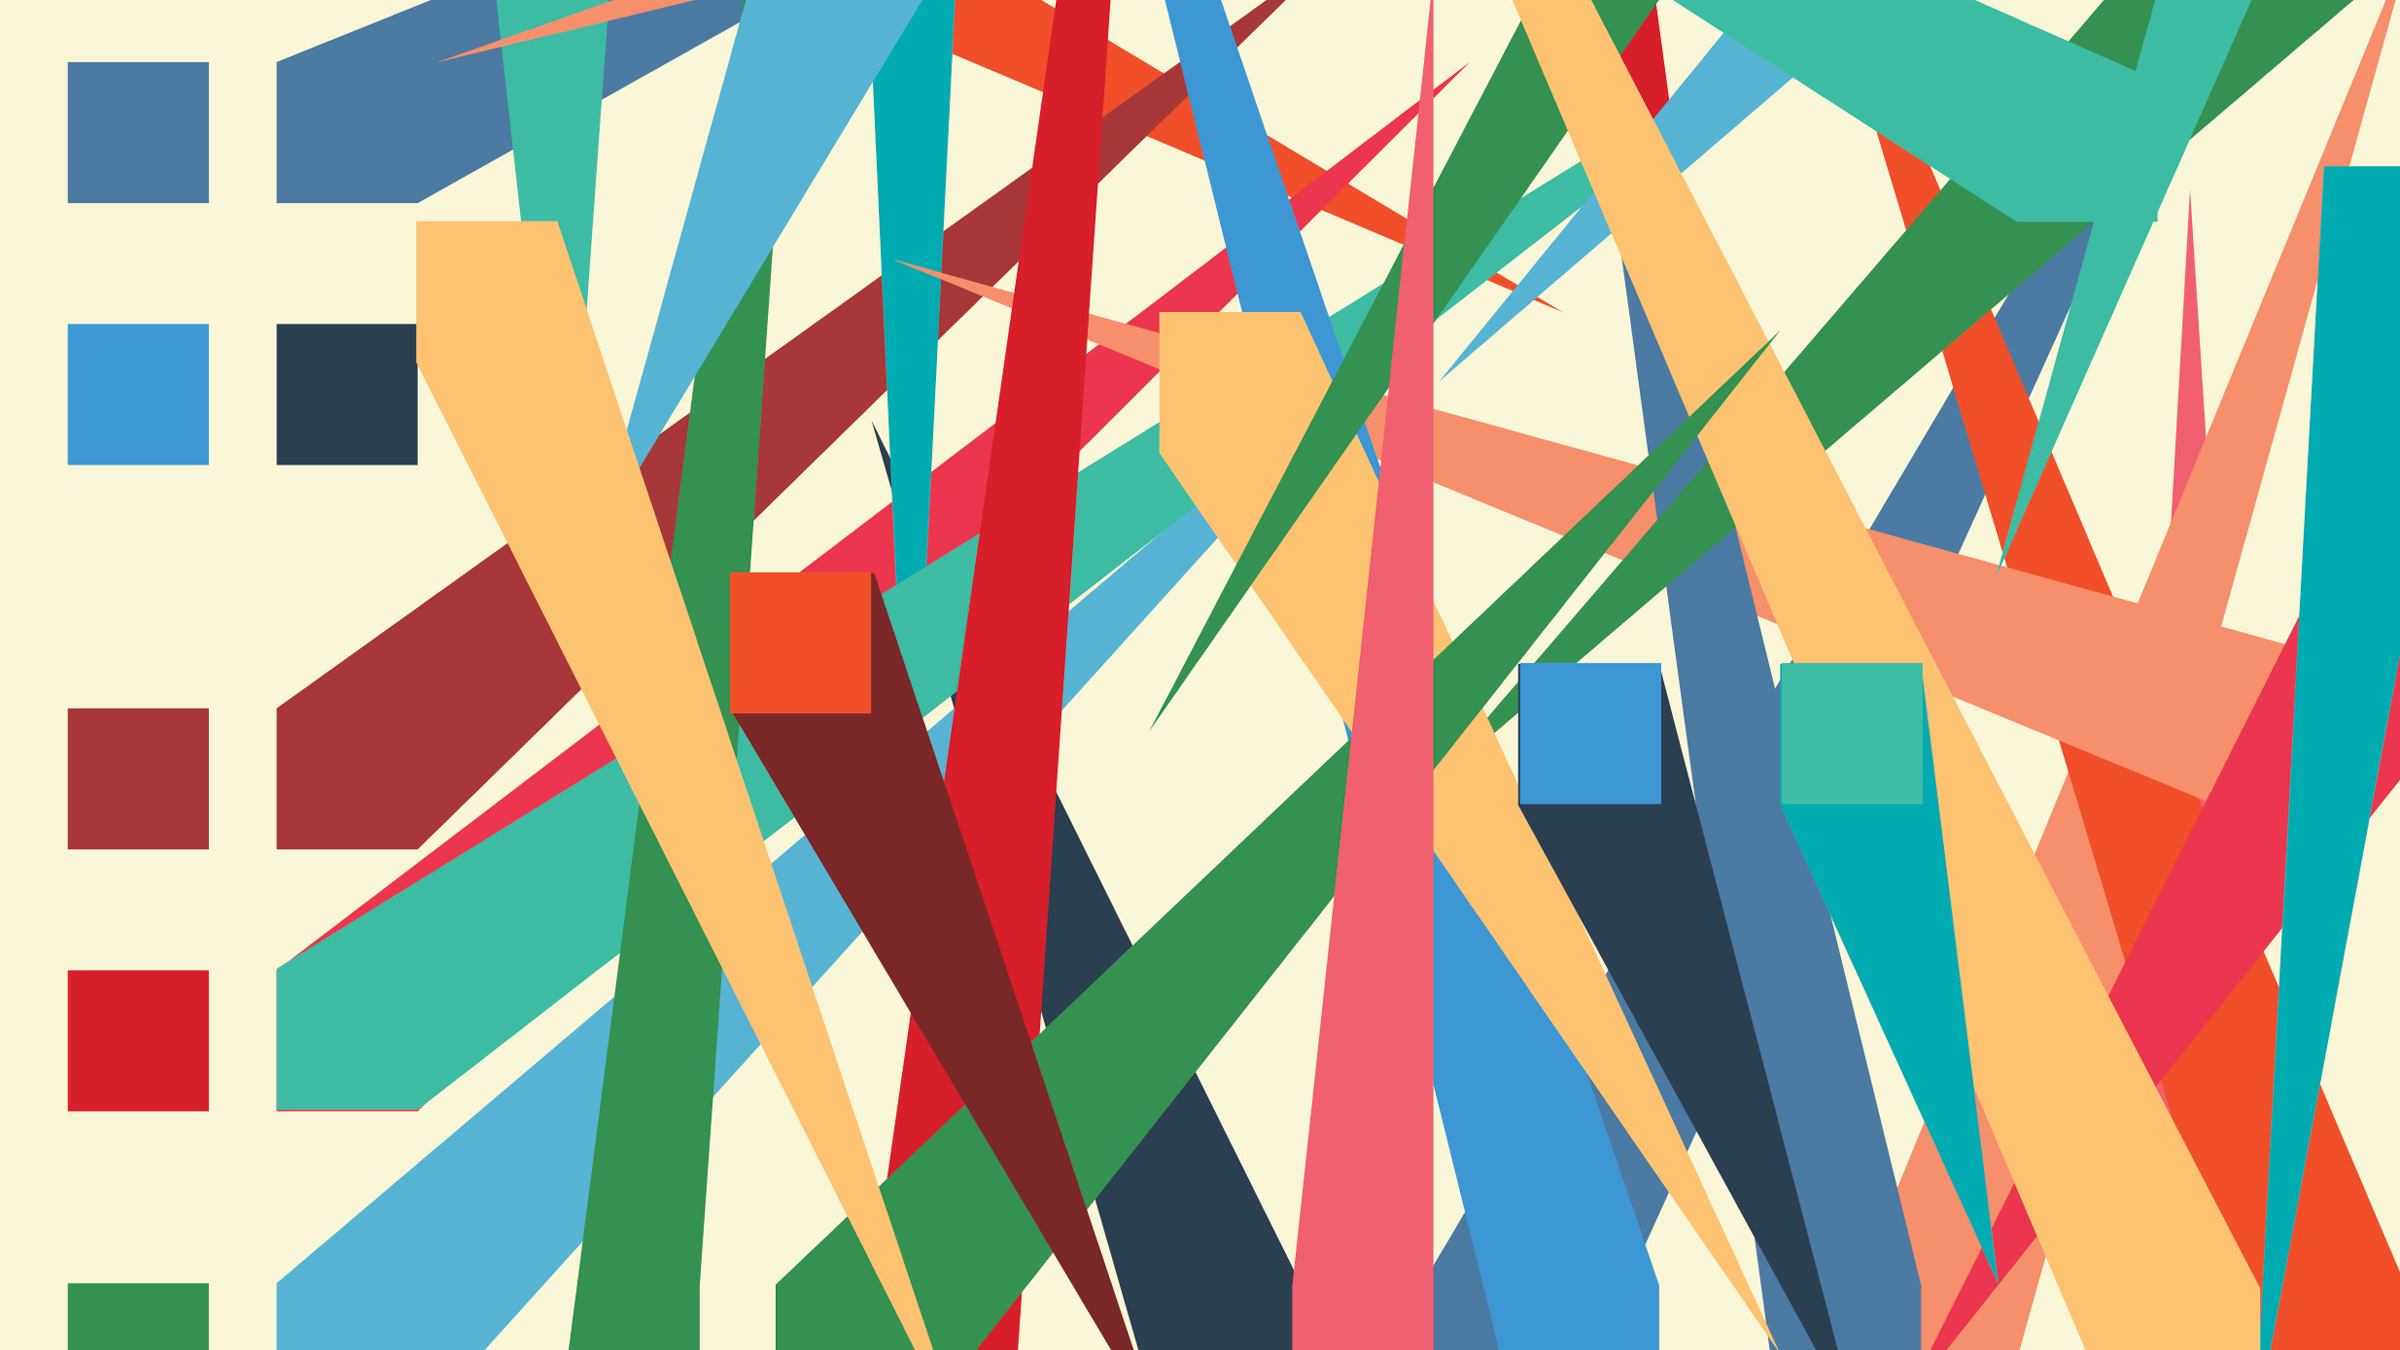 slashes of color on a grid, illustration